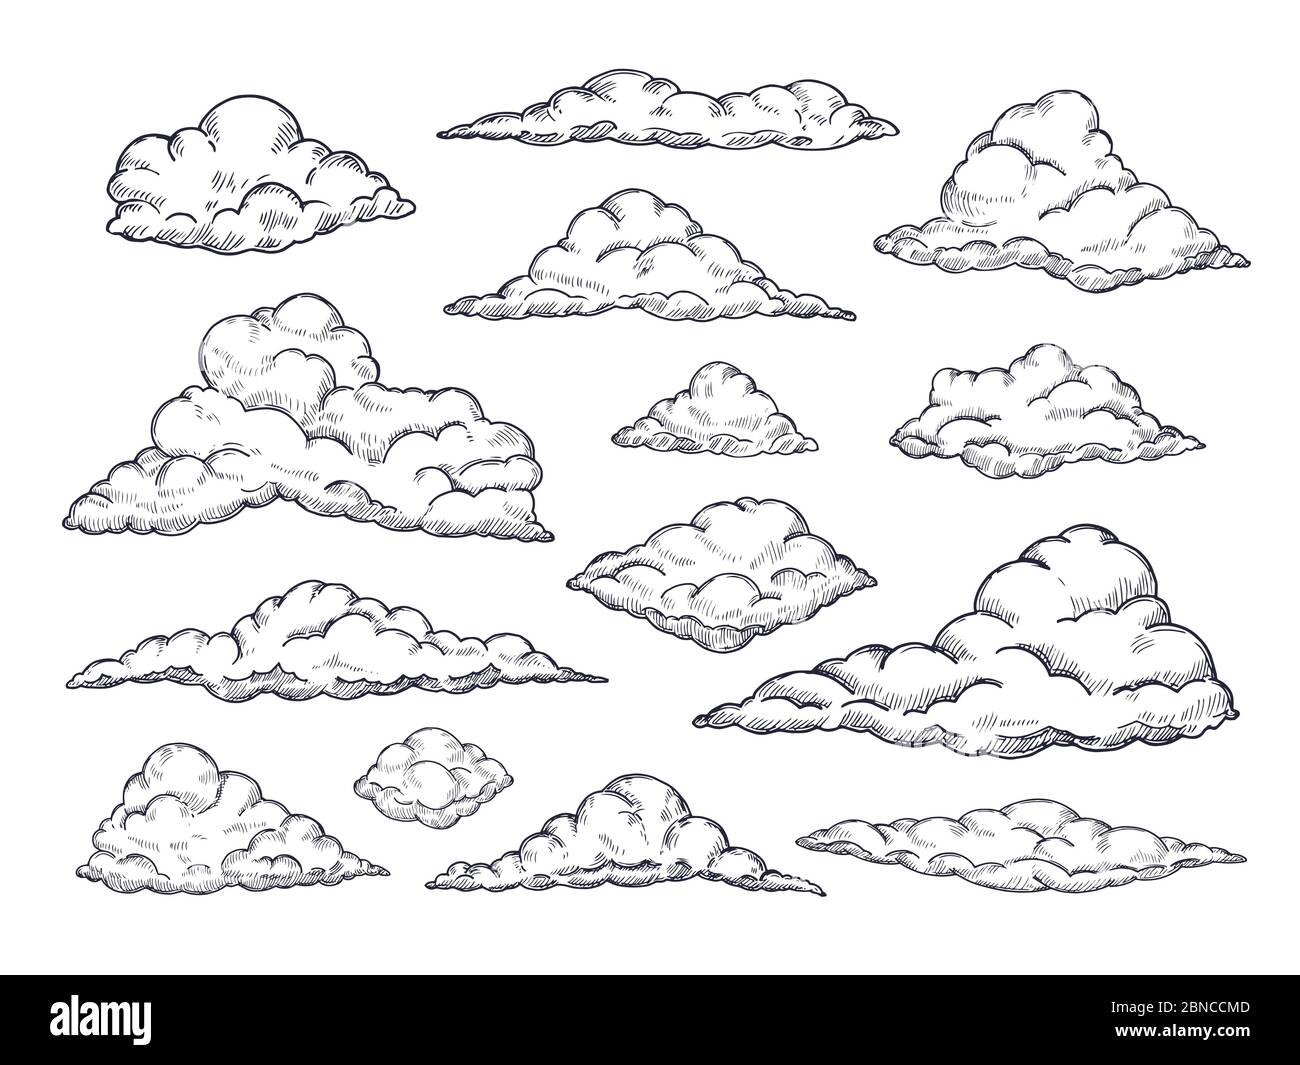 Esquisser des nuages. Ciel nuageux dessiné à la main. Esquisse de contours nuage collection de vecteurs vintage. Illustration de la forme de nuage de la collection Illustration de Vecteur